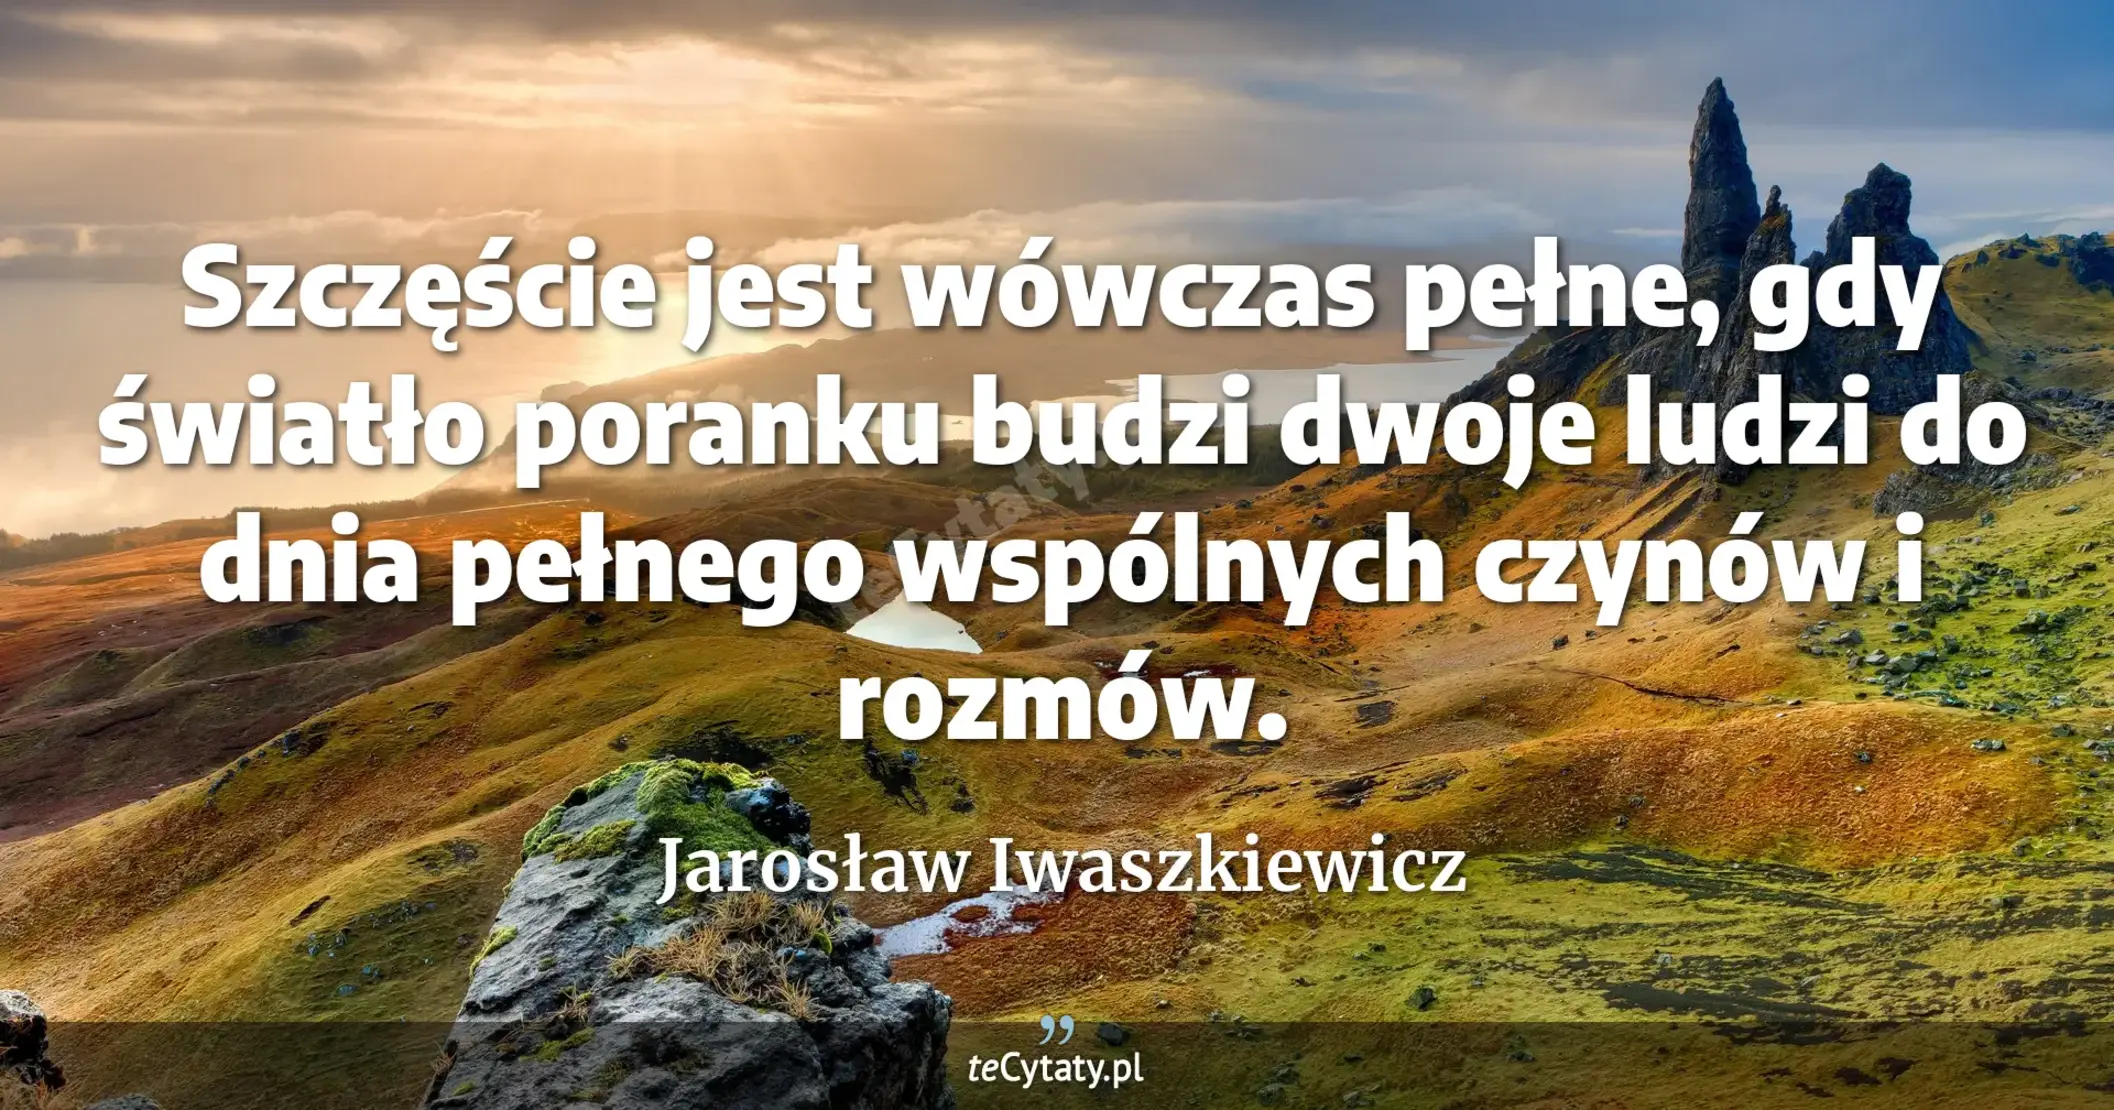 Szczęście jest wówczas pełne, gdy światło poranku budzi dwoje ludzi do dnia pełnego wspólnych czynów i rozmów. - Jarosław Iwaszkiewicz